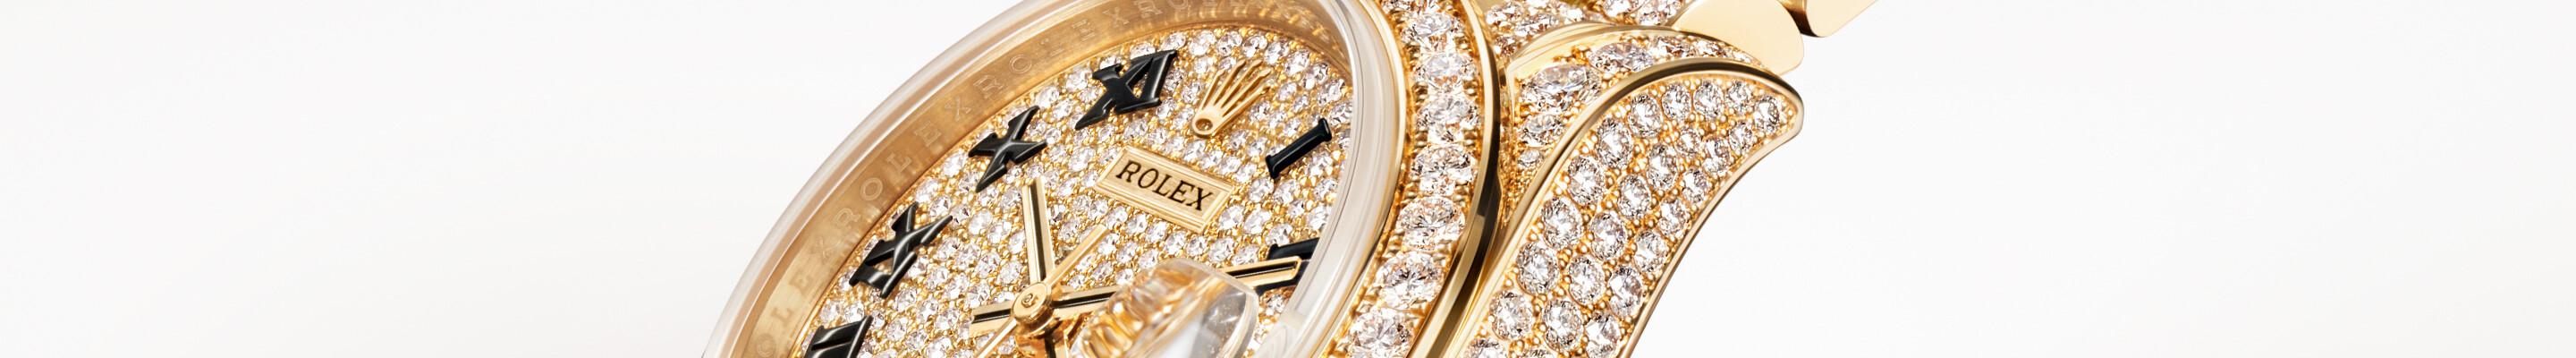 ROLEX LADY-DATEJUST chez Boutique Rolex Genève